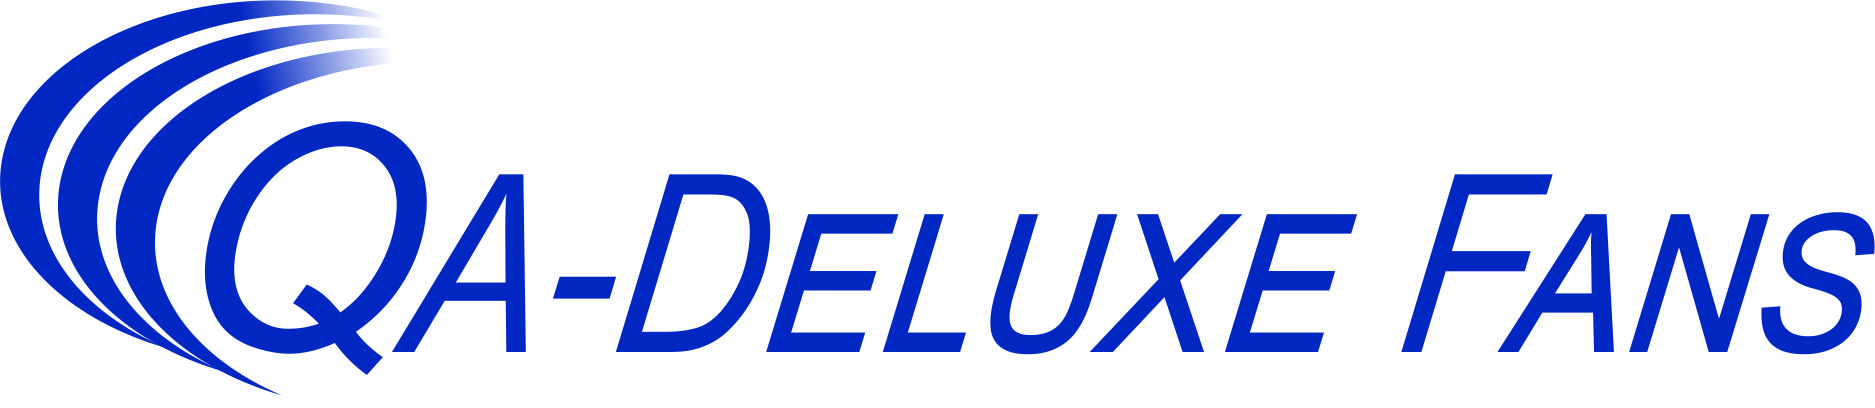 QA-Deluxe Fans logo